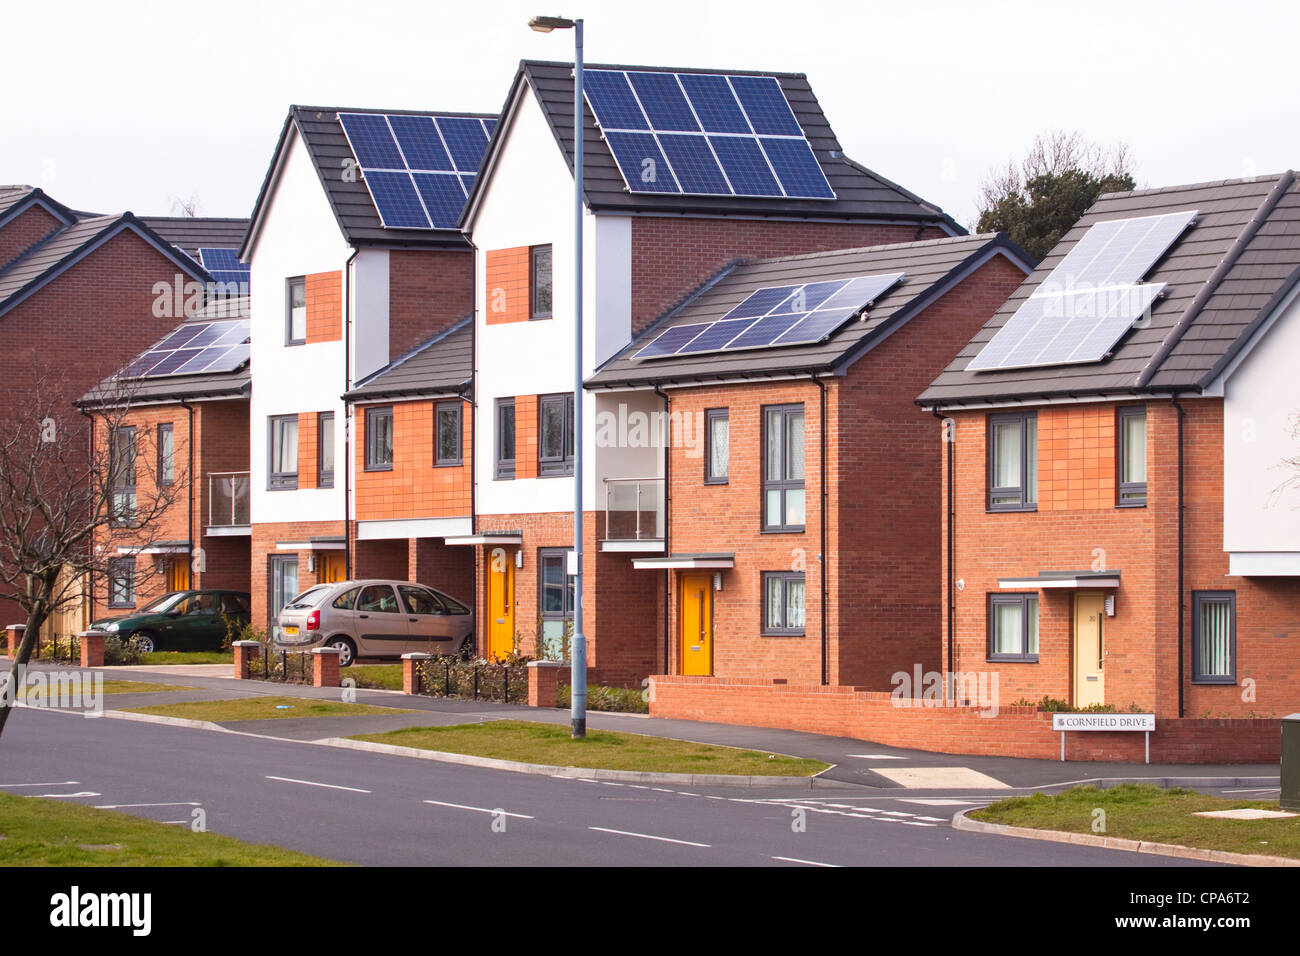 Neues Gehäuse mit Photovoltaik-Solaranlagen Systeme auf Dach, Birmingham, England, UK Stockfoto